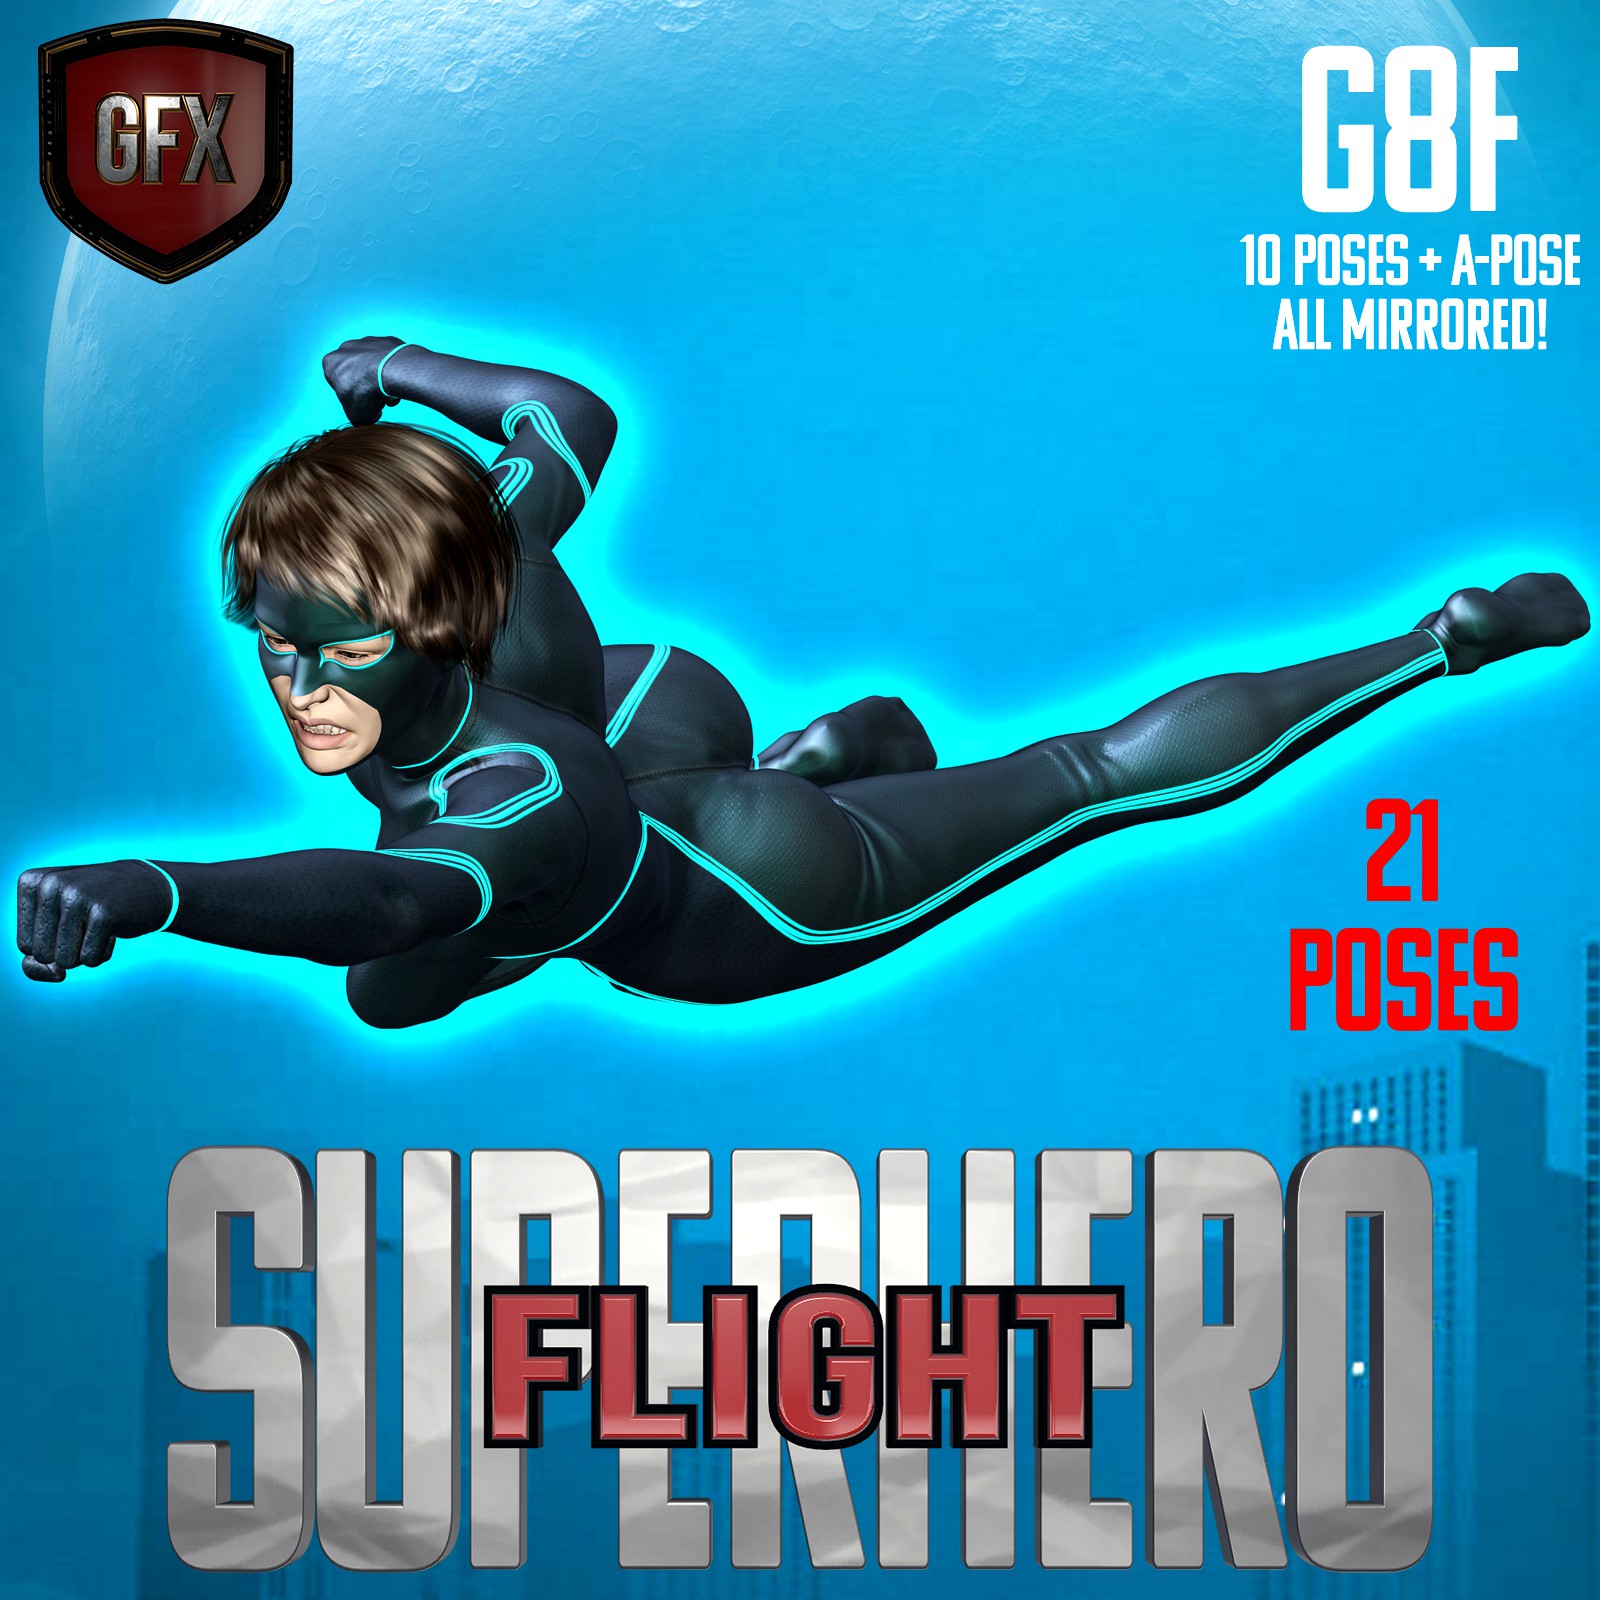 SuperHero Flight for G8F Volume 1